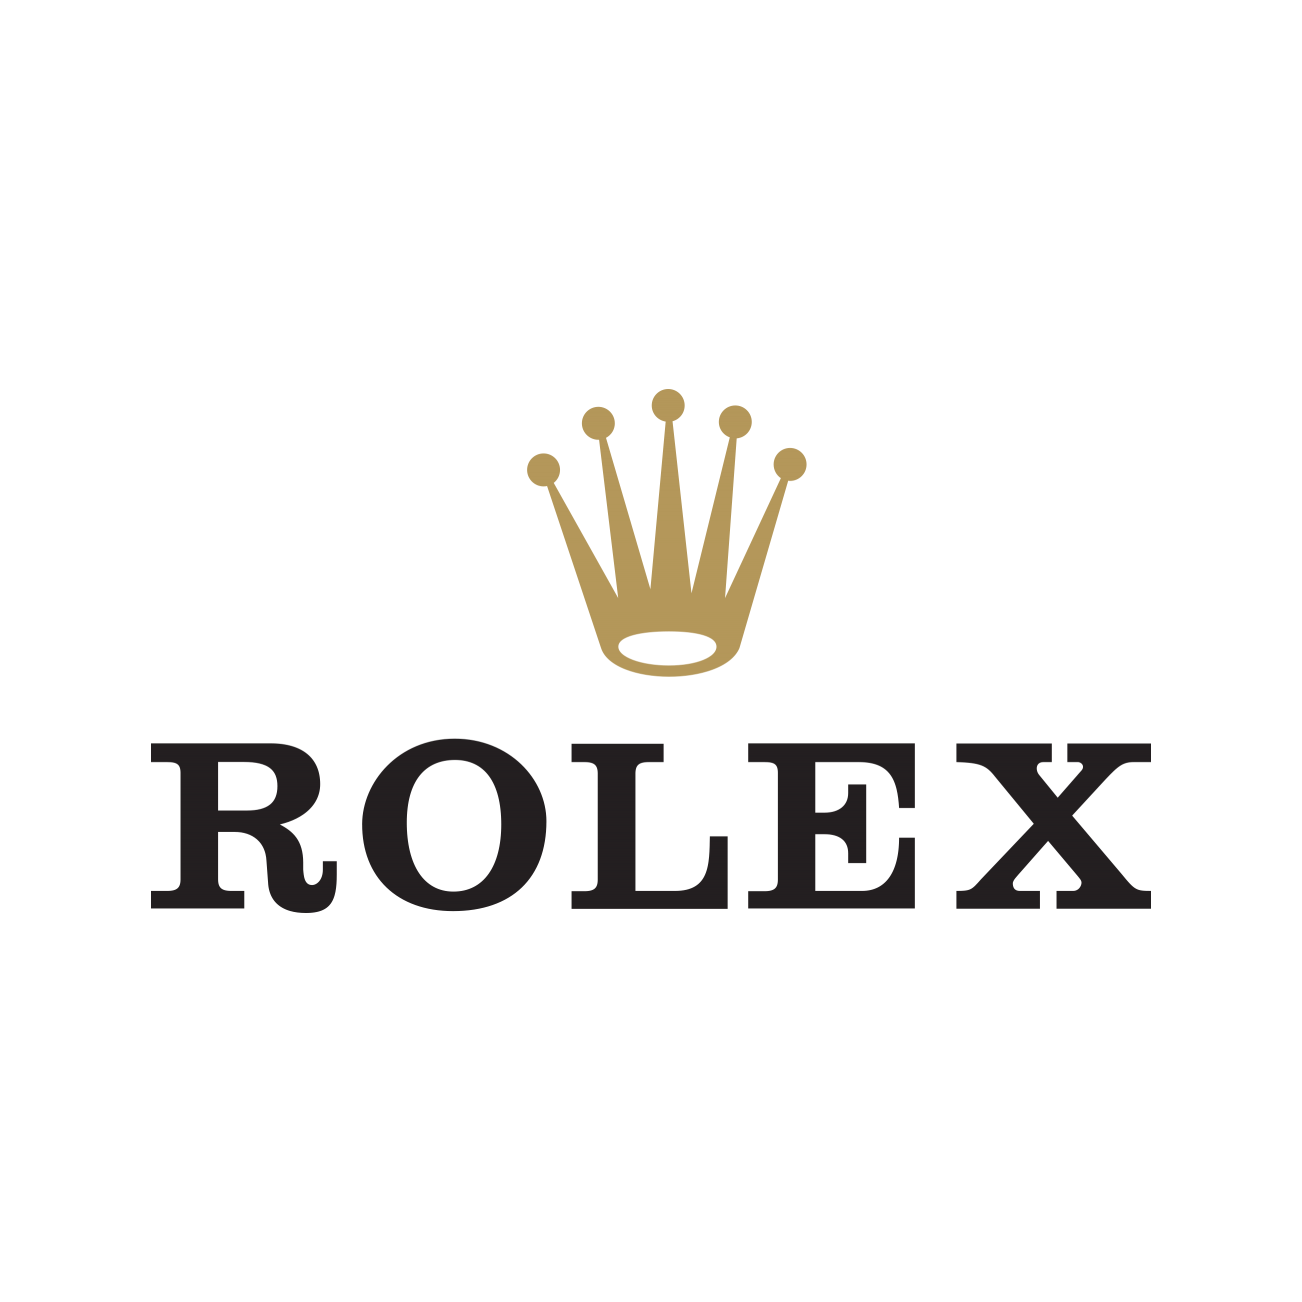 Rolex - sprrawdź wszystkie promocje